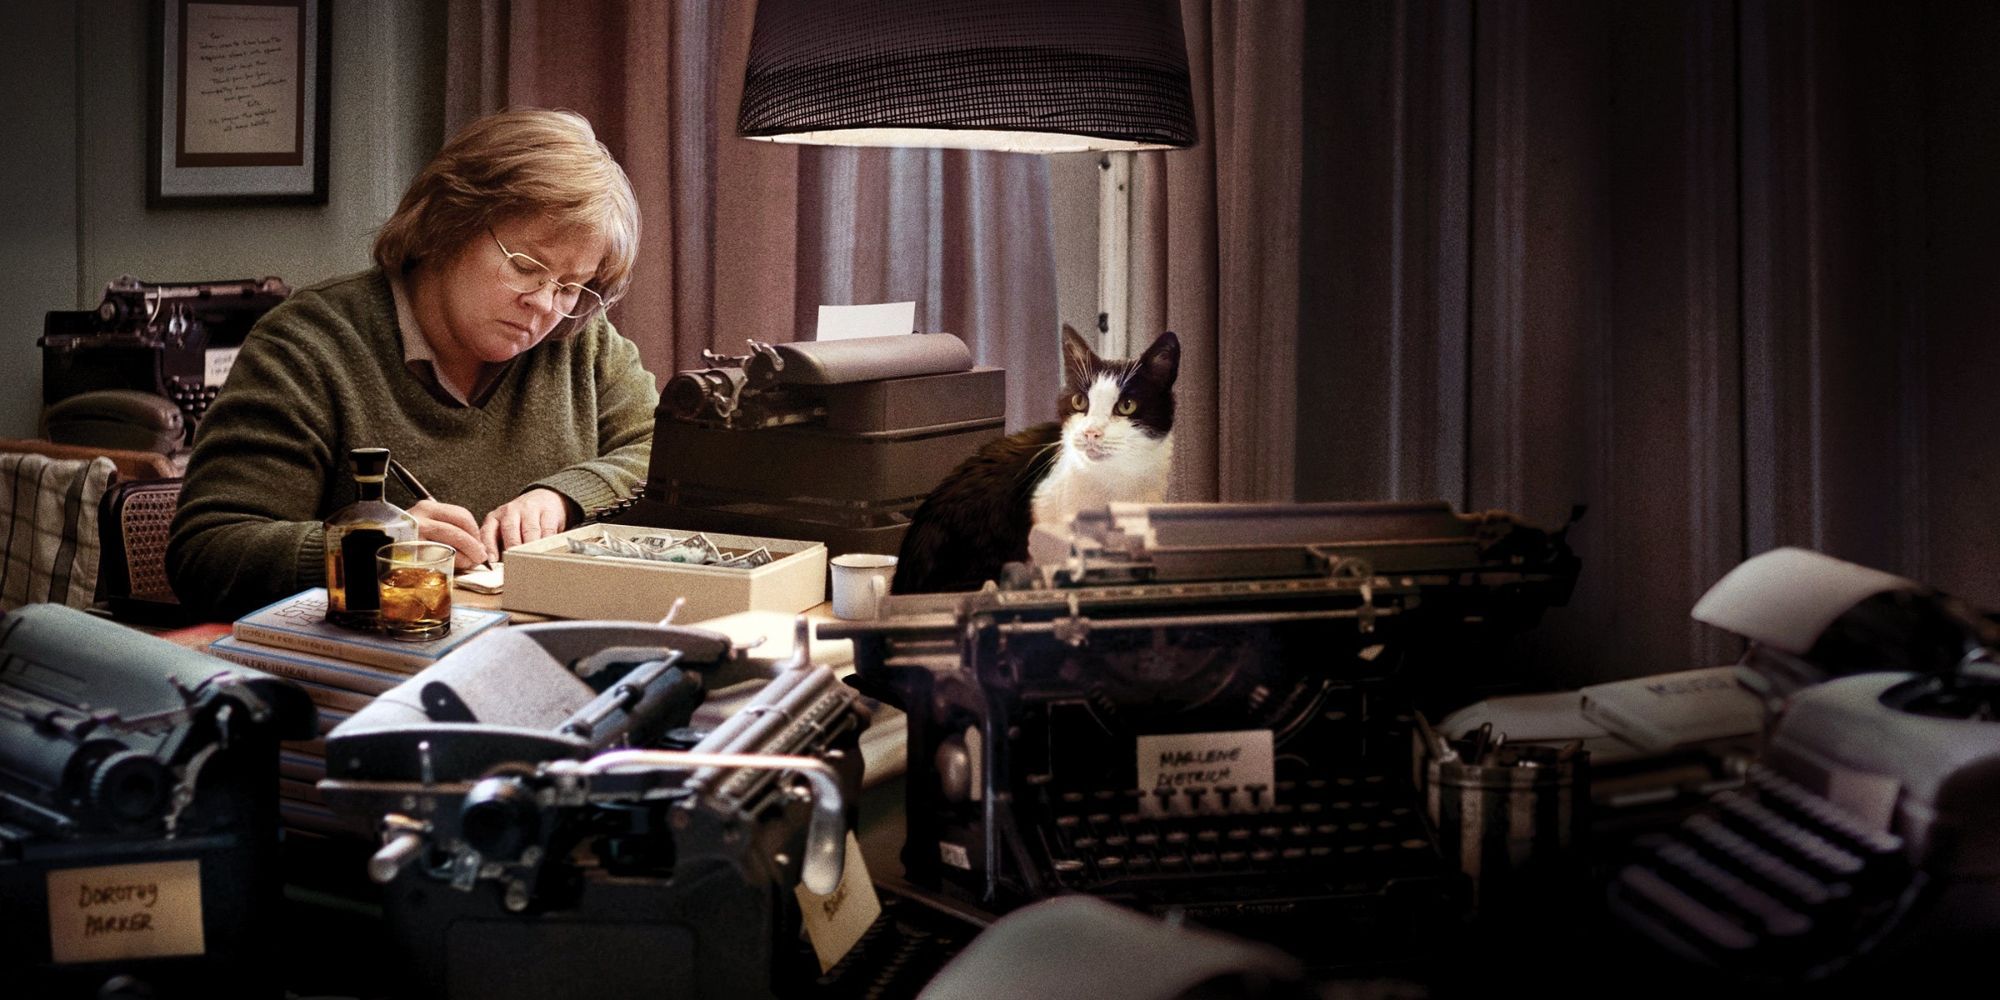 Une femme travaillant entourée d'un chat et de nombreuses machines à écrire.